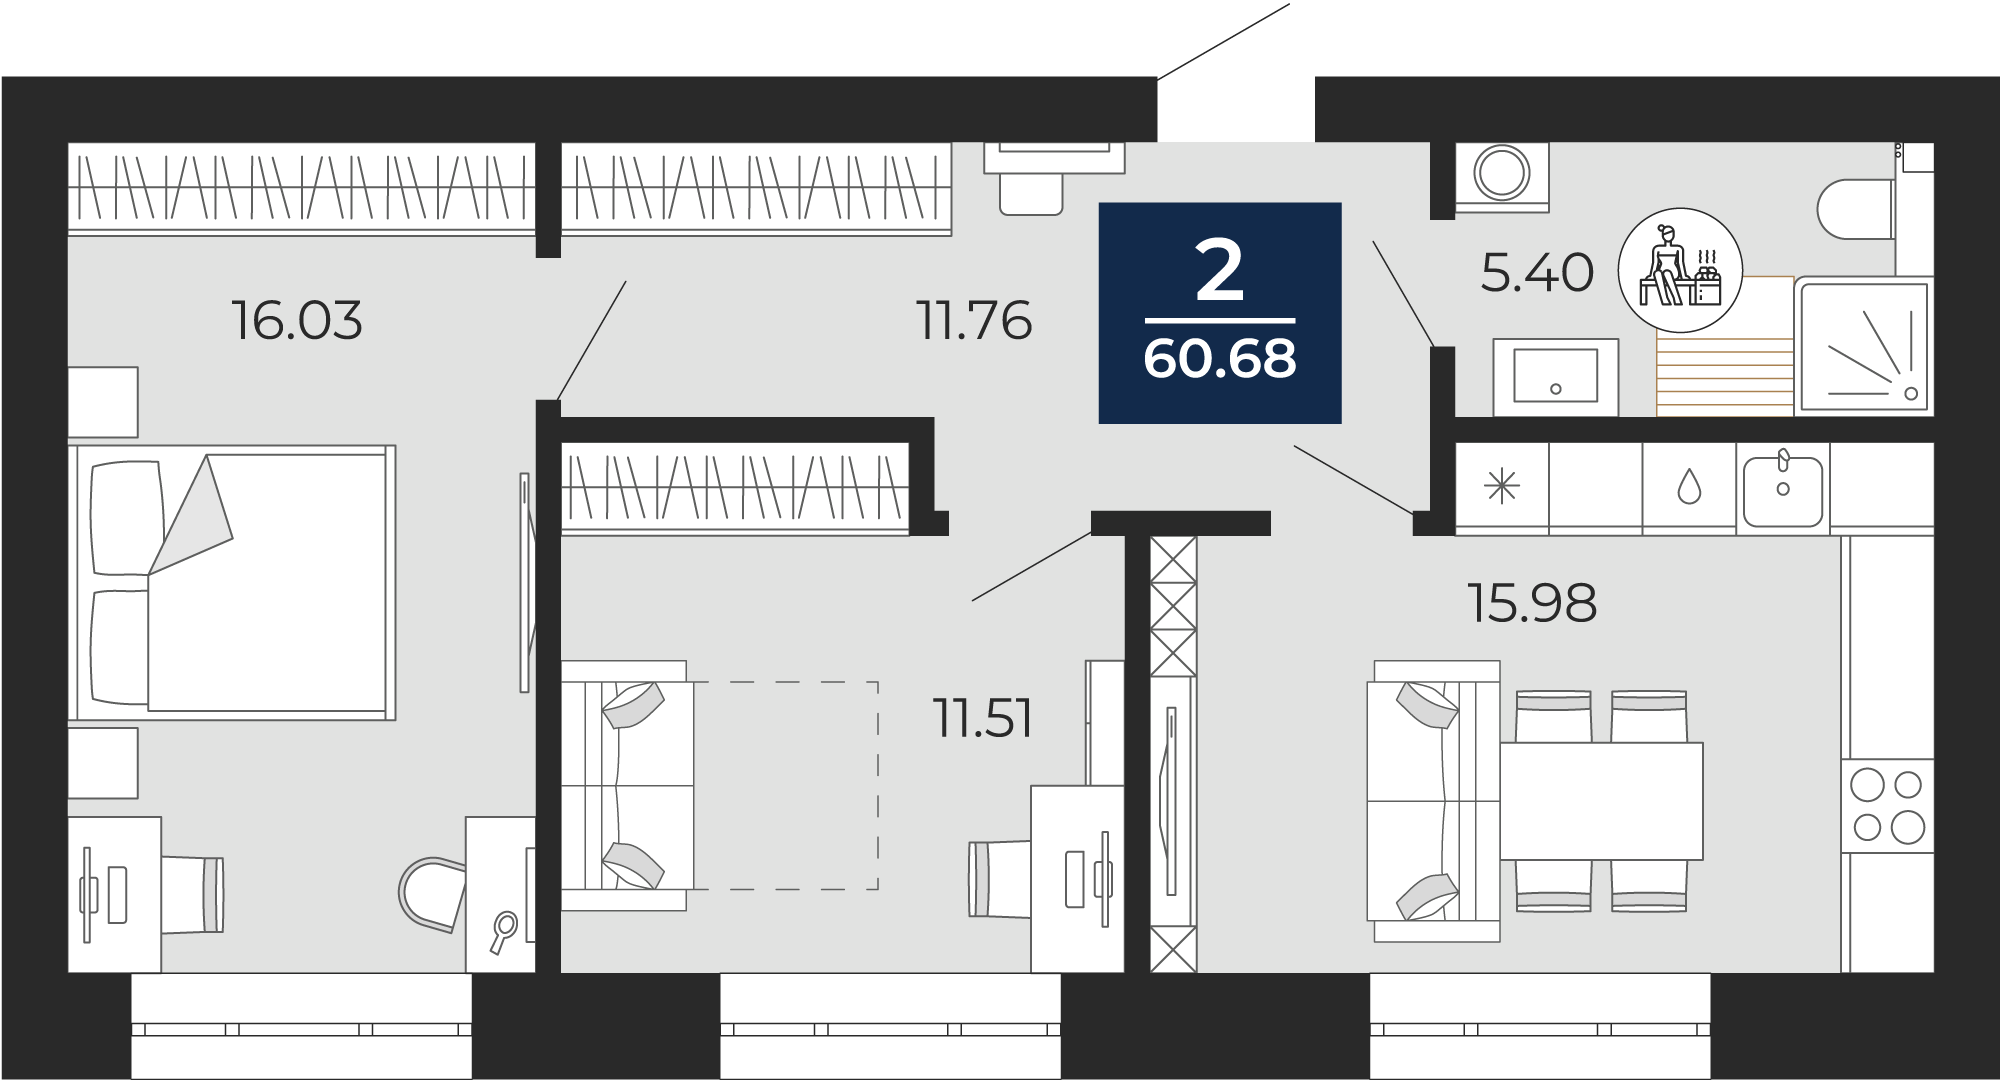 Квартира № 43, 2-комнатная, 60.68 кв. м, 8 этаж